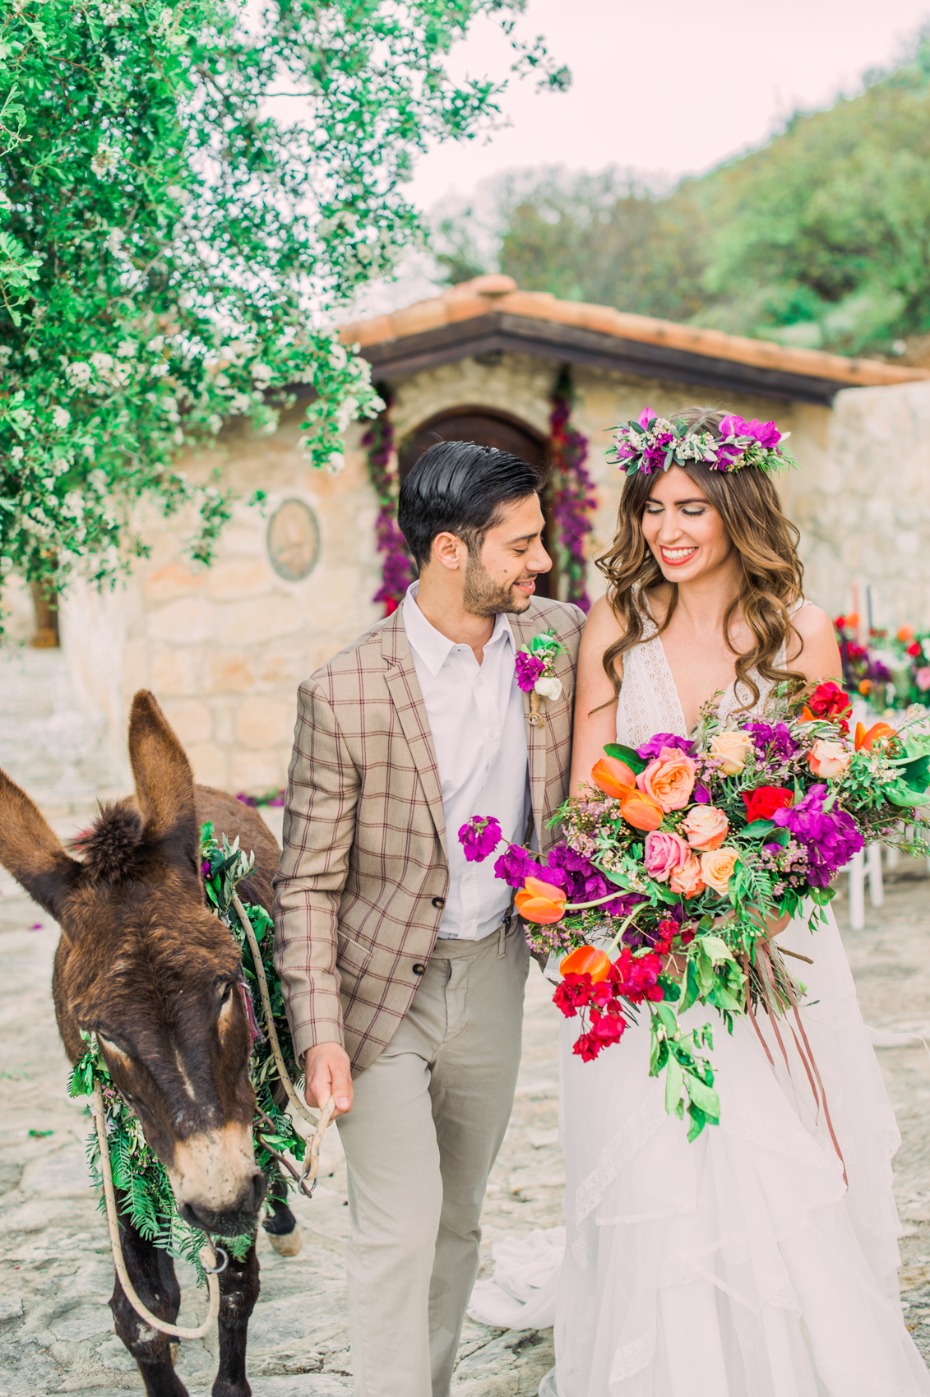 Colorful boho wedding with a donkey